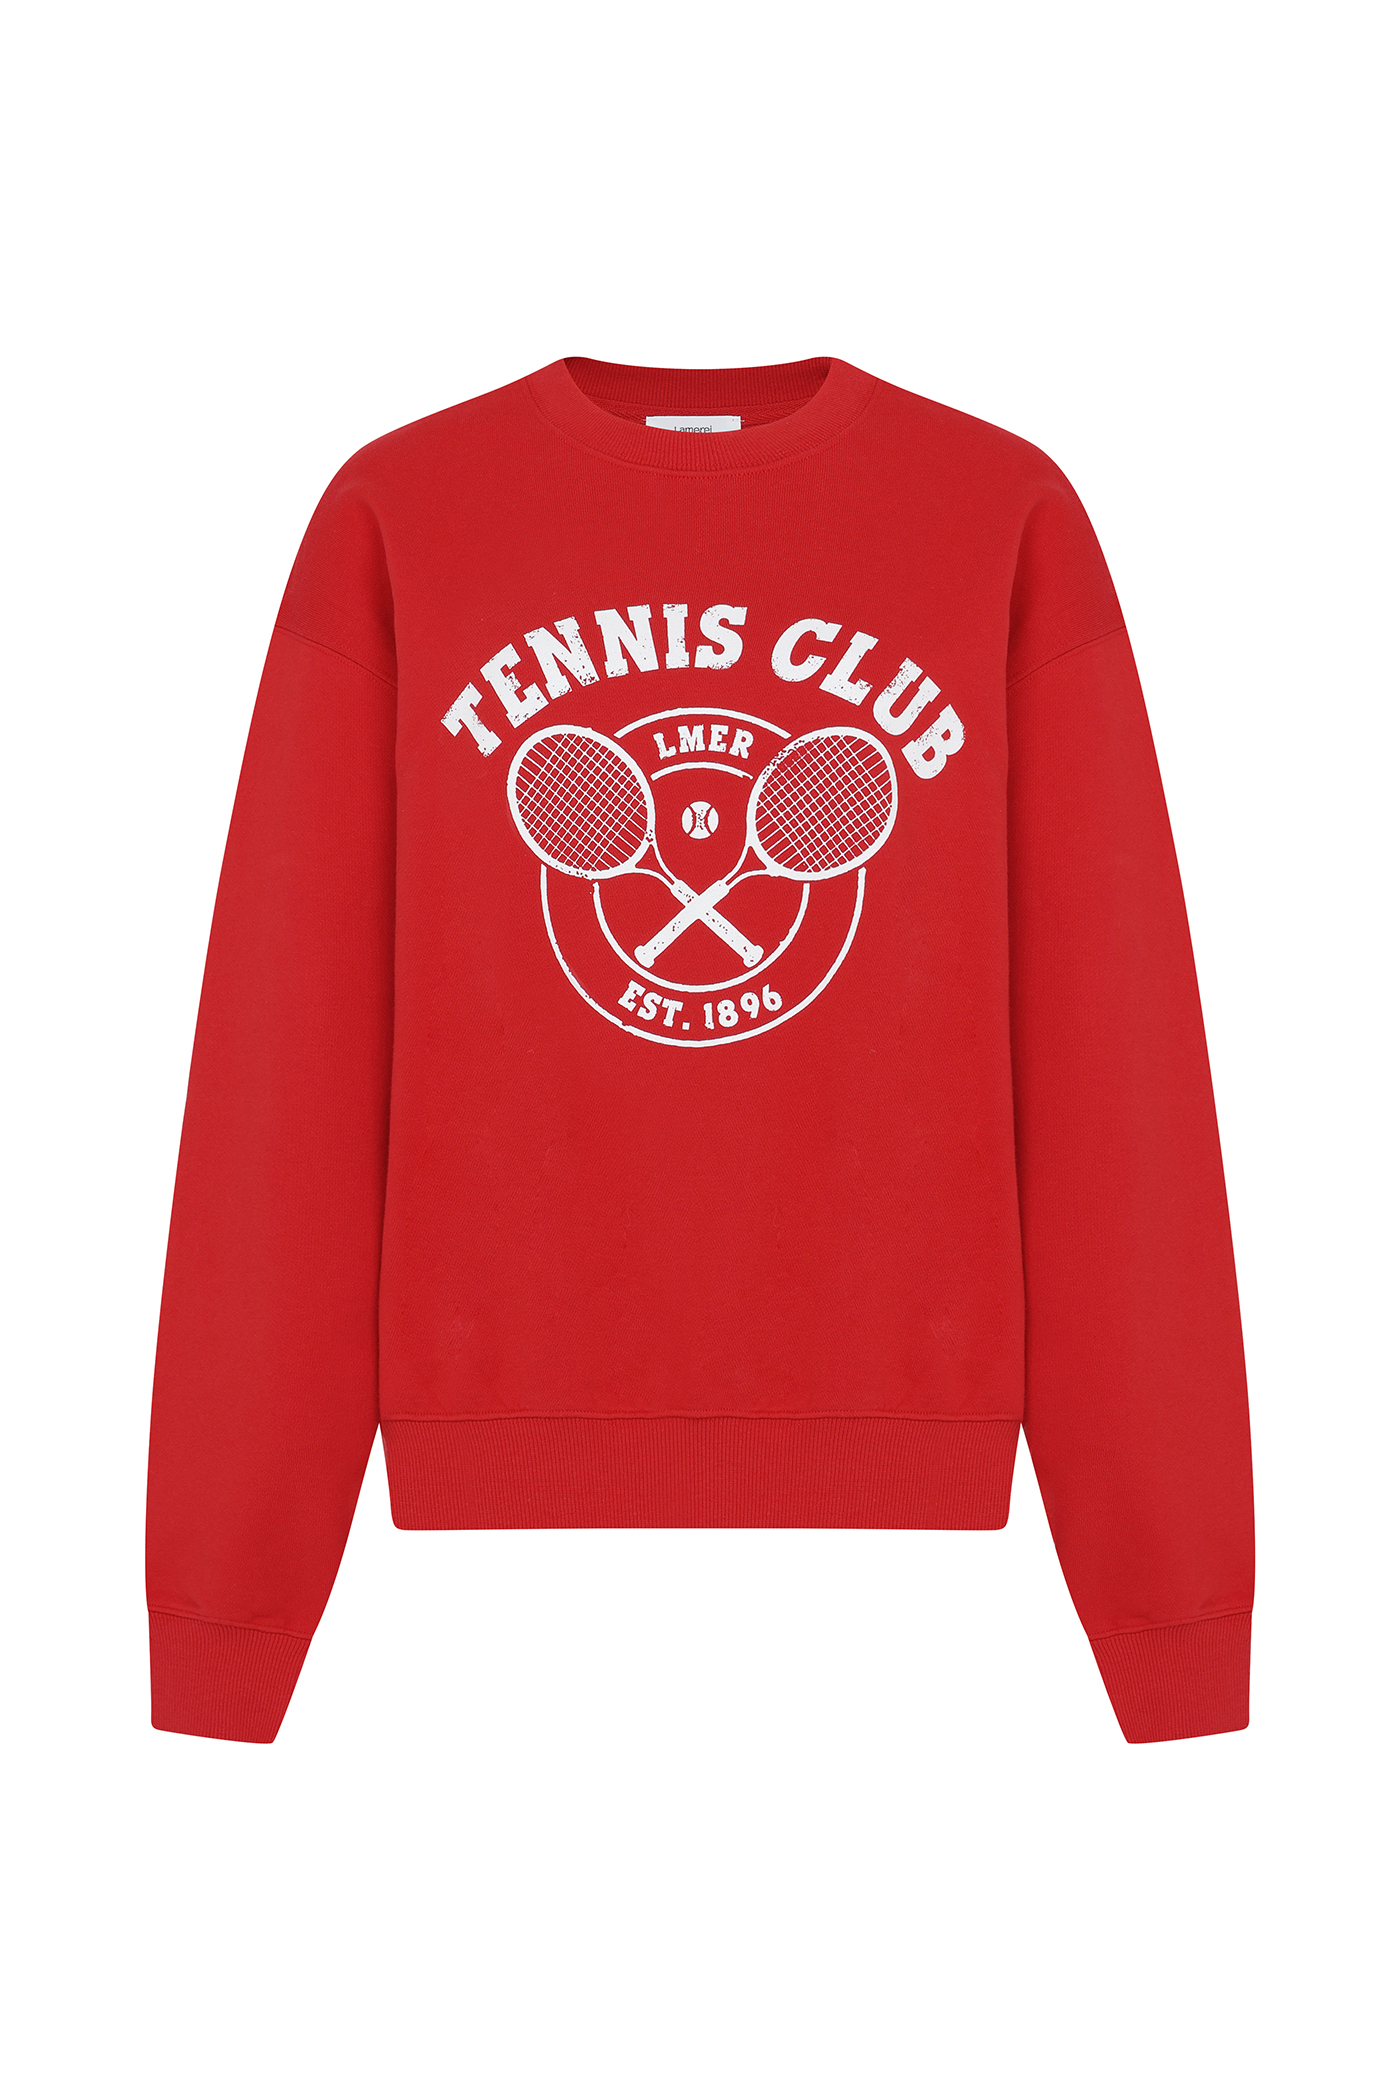 LMER Tennis Sweat Shirt[LMBCAUTT623]-3color